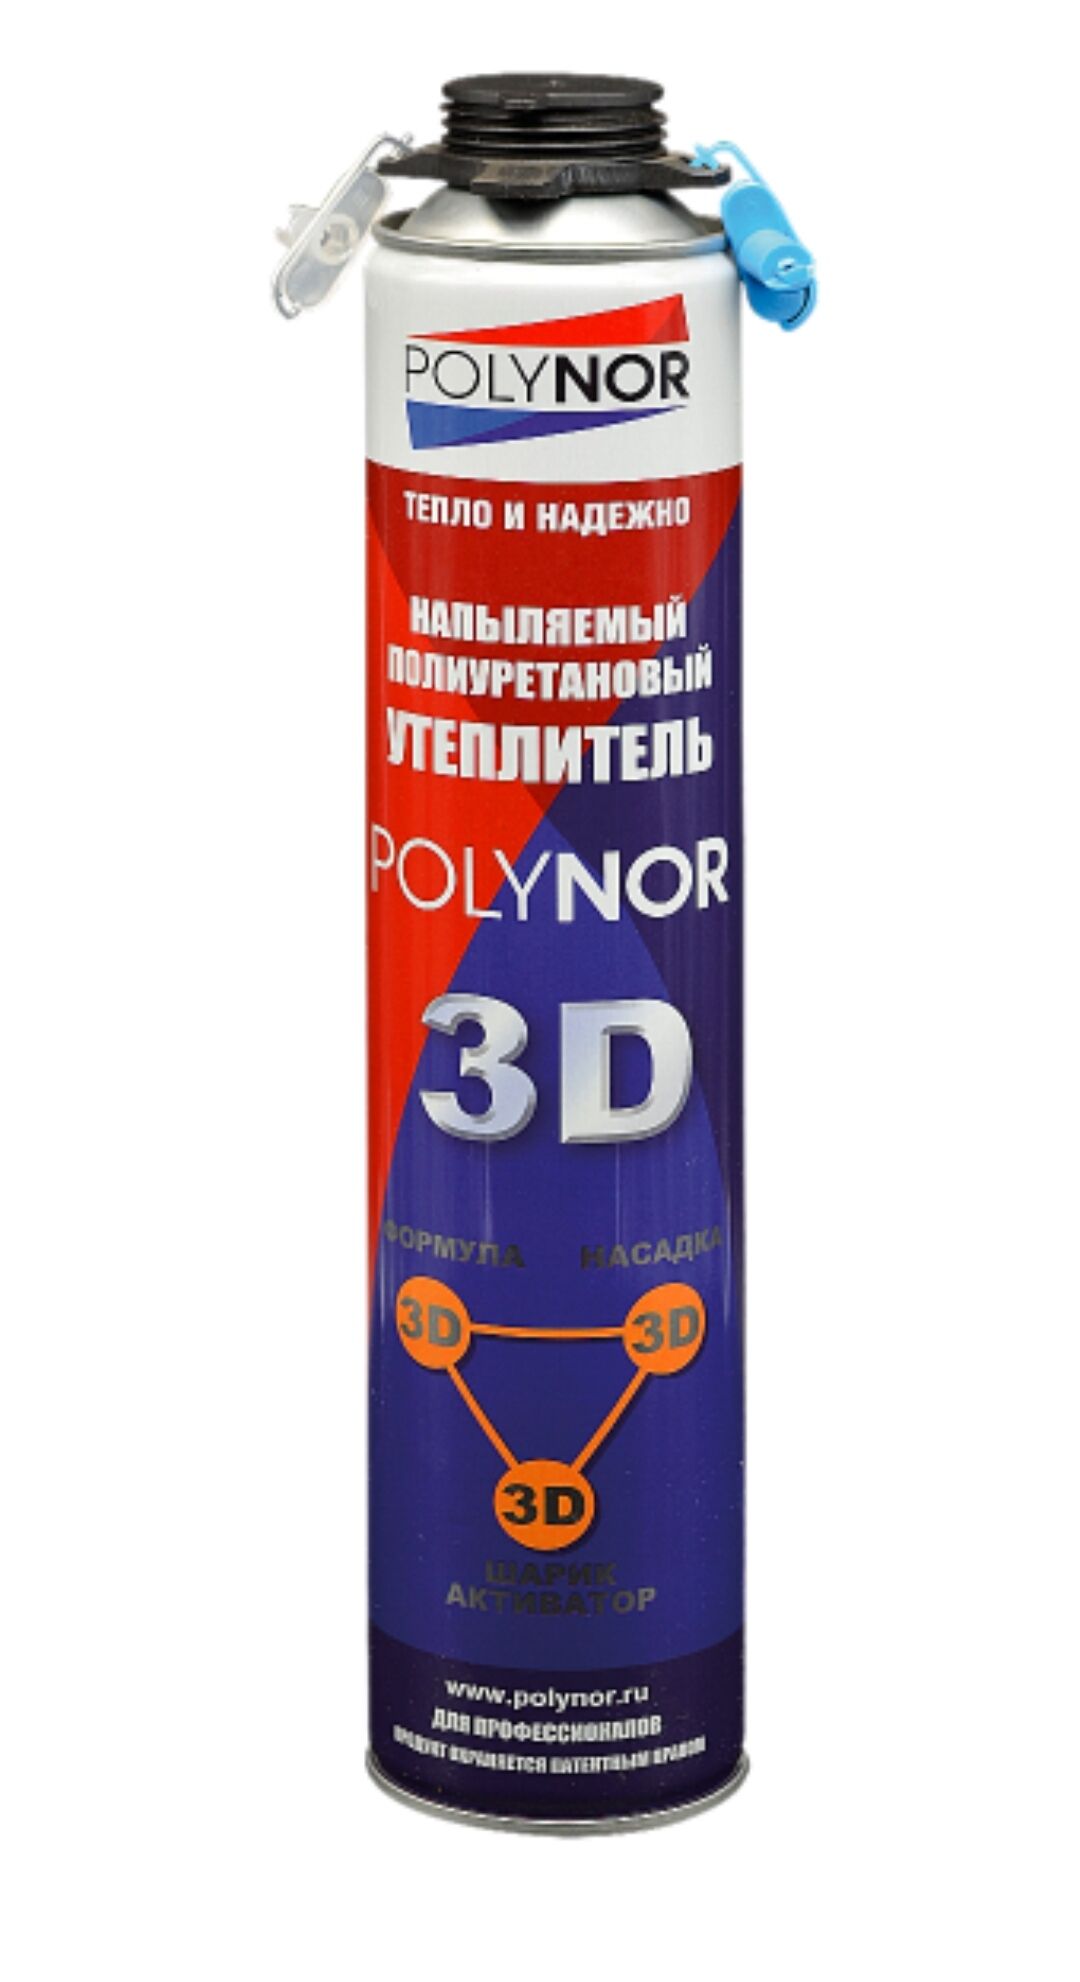 Утеплитель напыляемый POLYNOR 3D